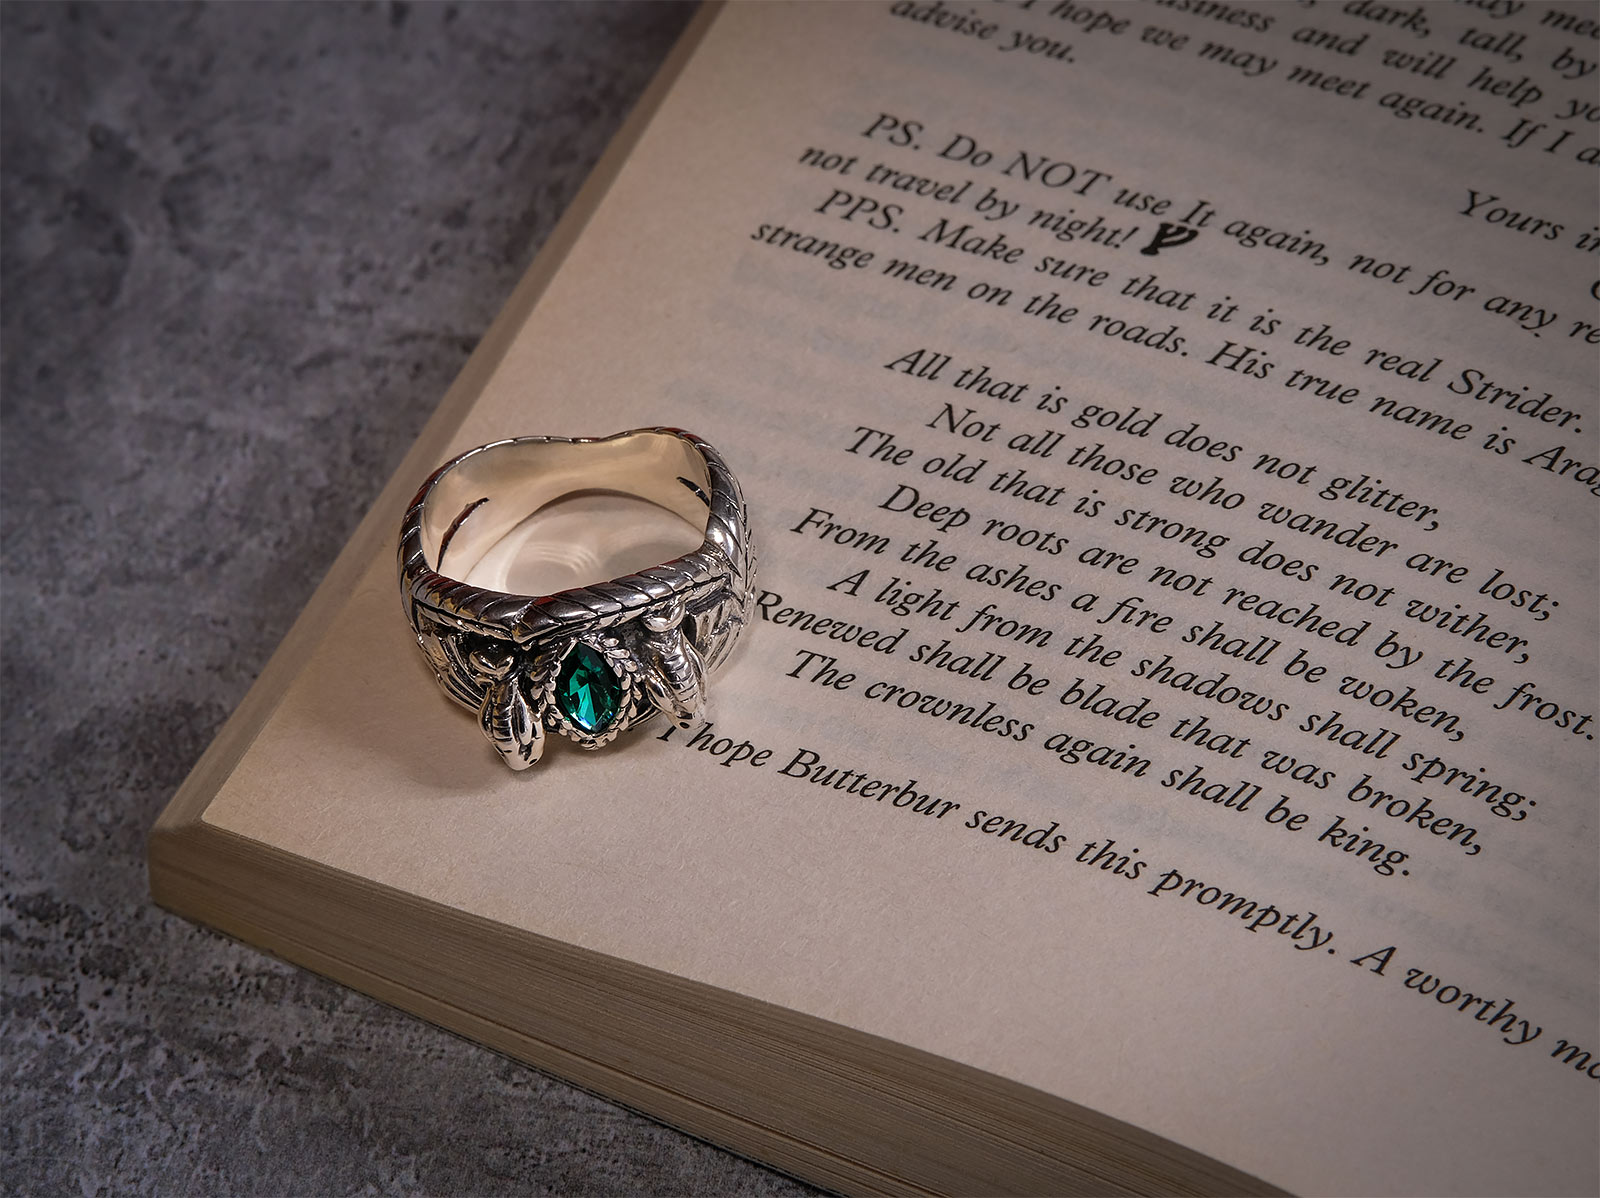 Barahirs Ring - Aragorns Ring